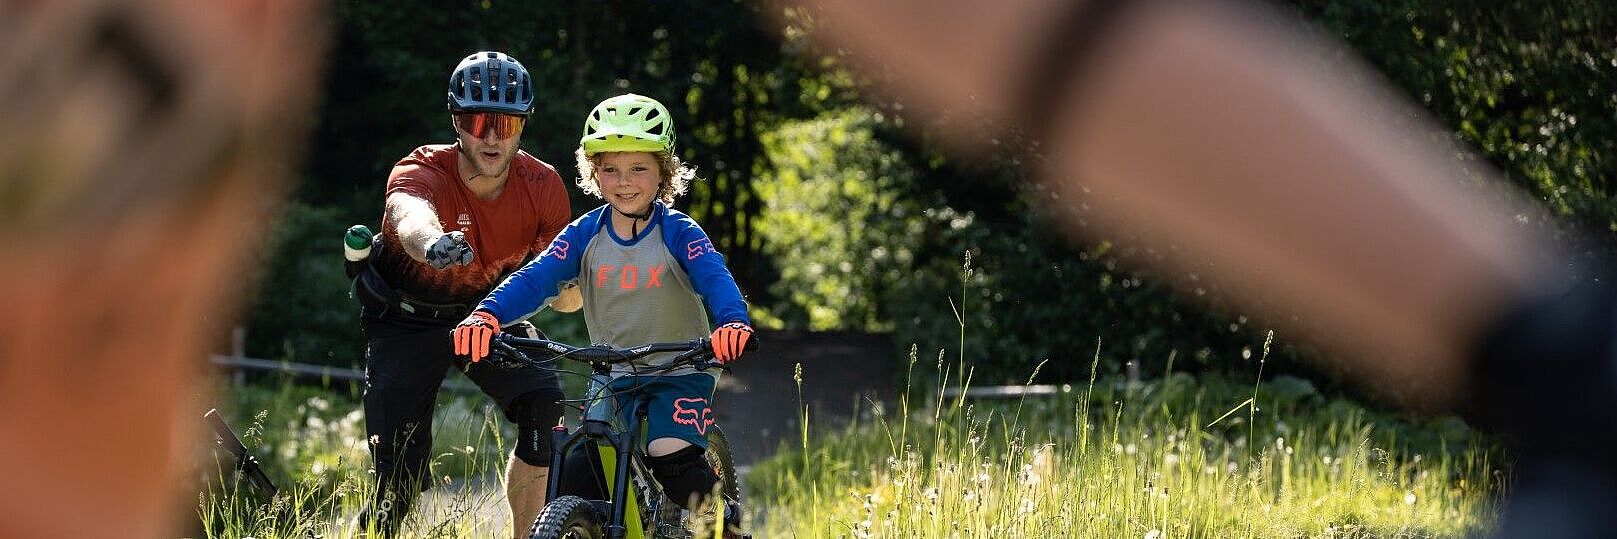 Bis zu 40% Rabatt auf Bike-Schule bei Bike-Verleih bei Bikefürst